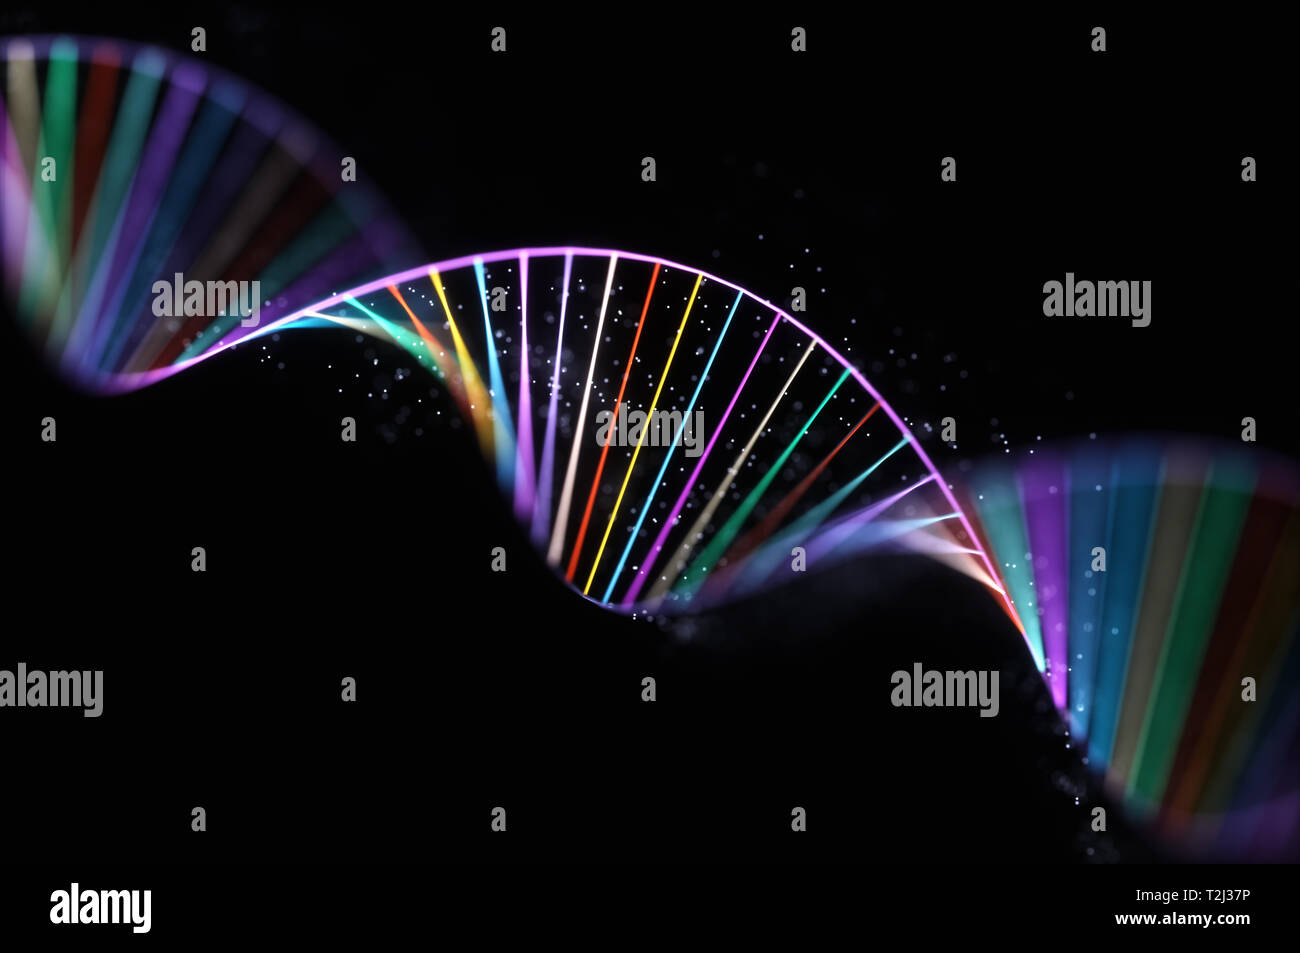 Bild von den genetischen Code der DNA. Konzept Bild für den Einsatz als Hintergrund. Farbige 3D-Darstellung. Stockfoto